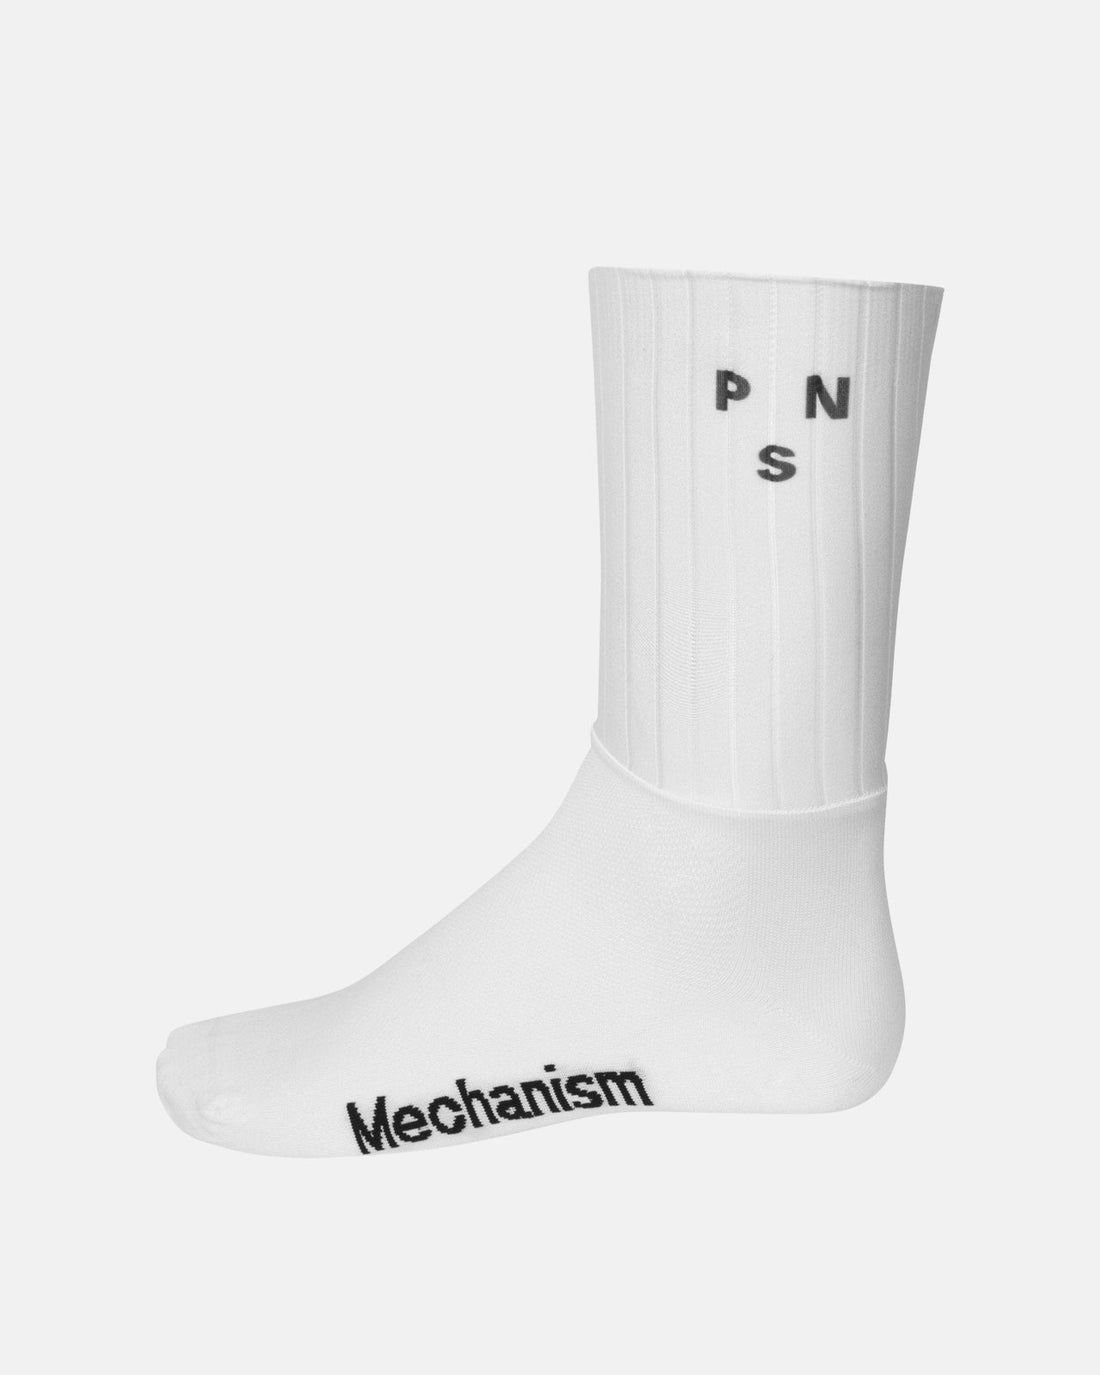 Mechanism Aero Socks - White